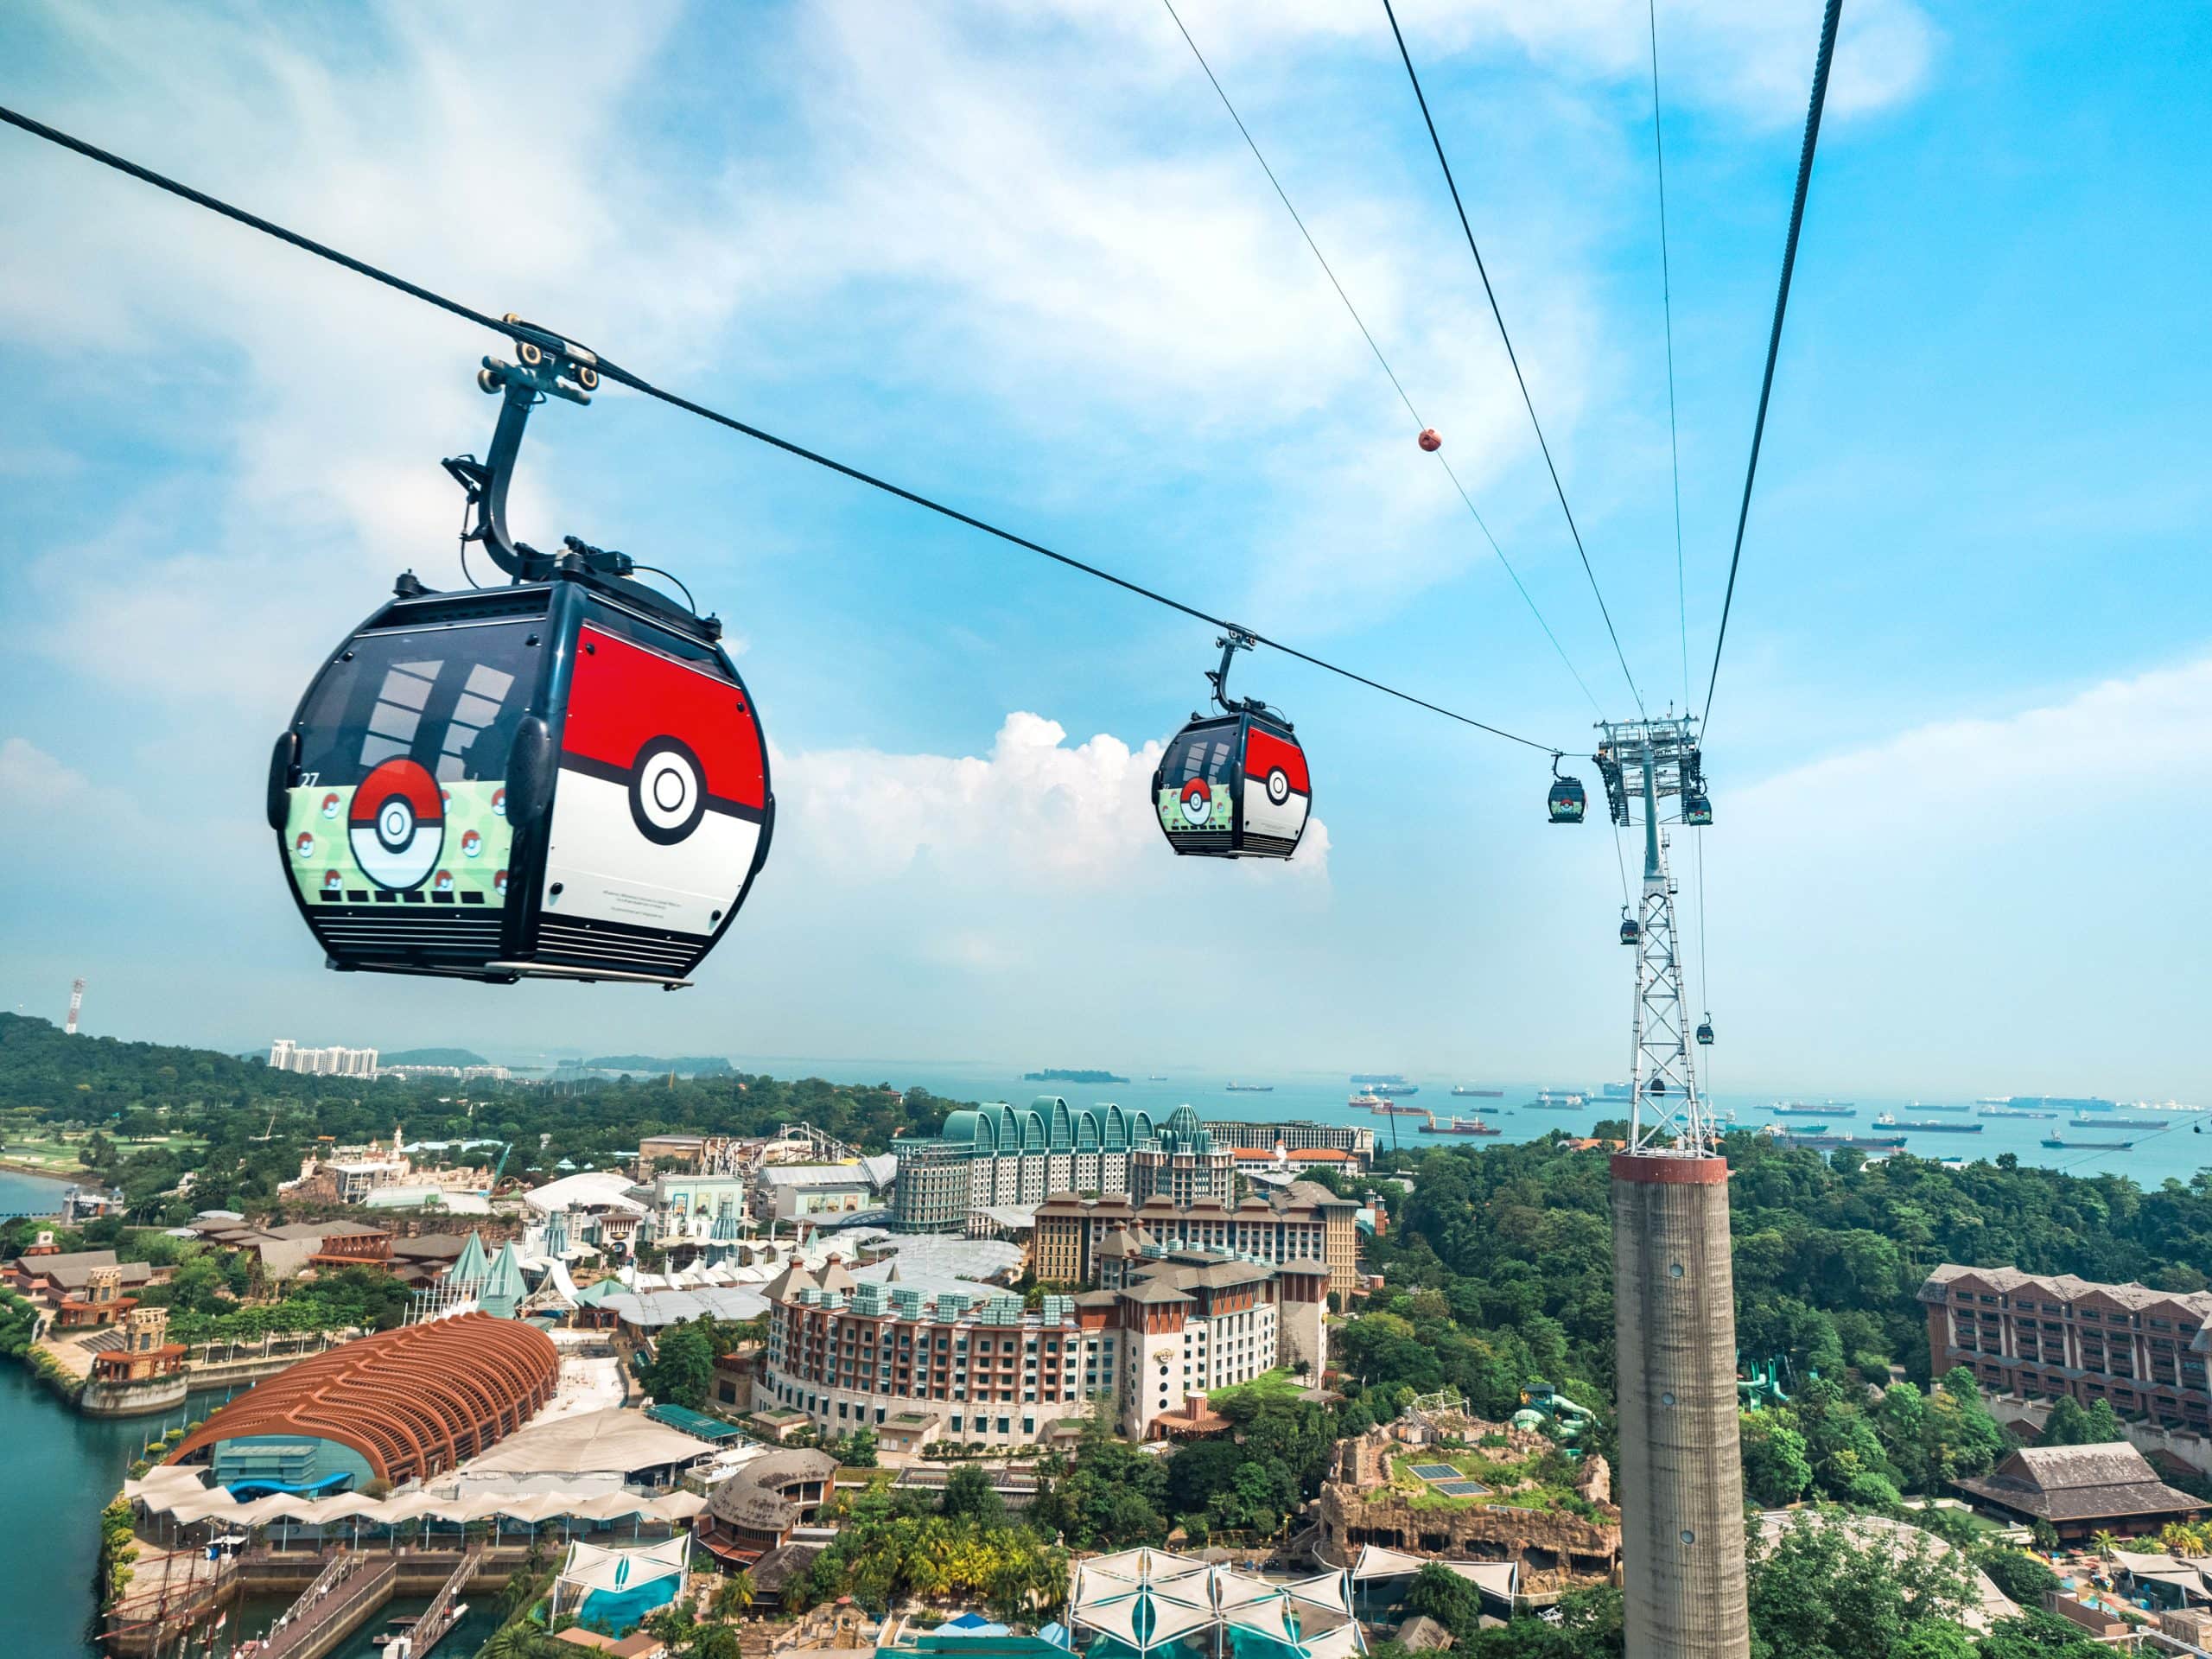 Pokémon cable car